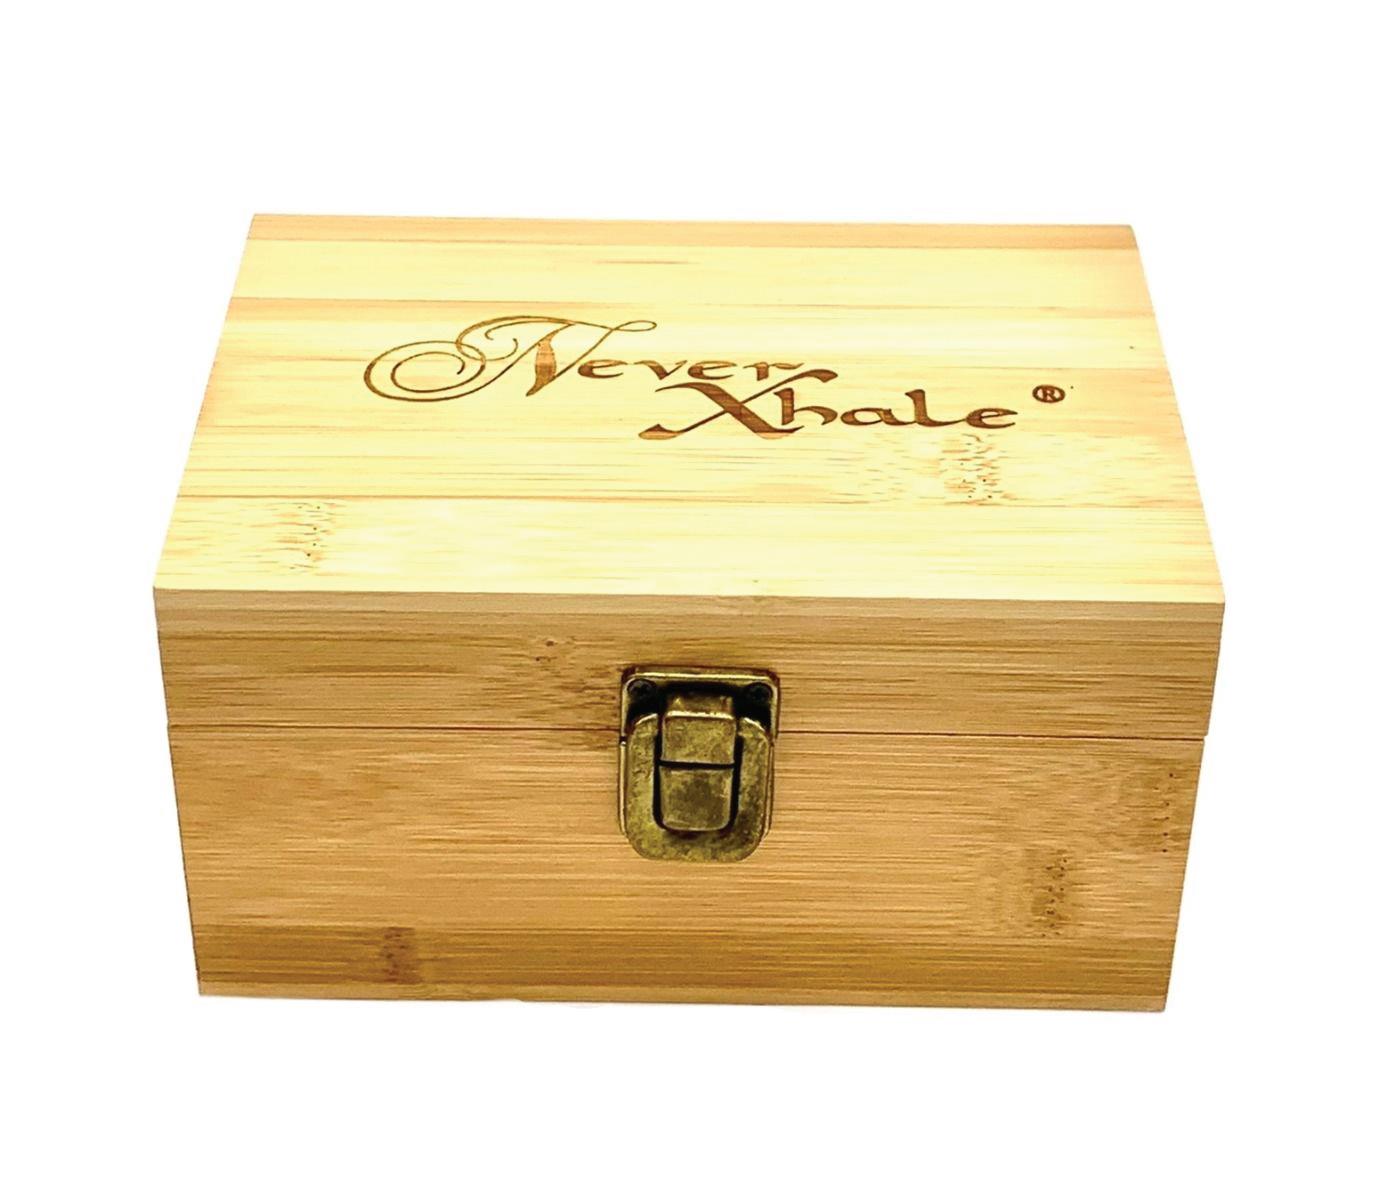 (3ct) 6" x 4" x 3.5" NeverXhale Bamboo Stash Storage Box $14 EA